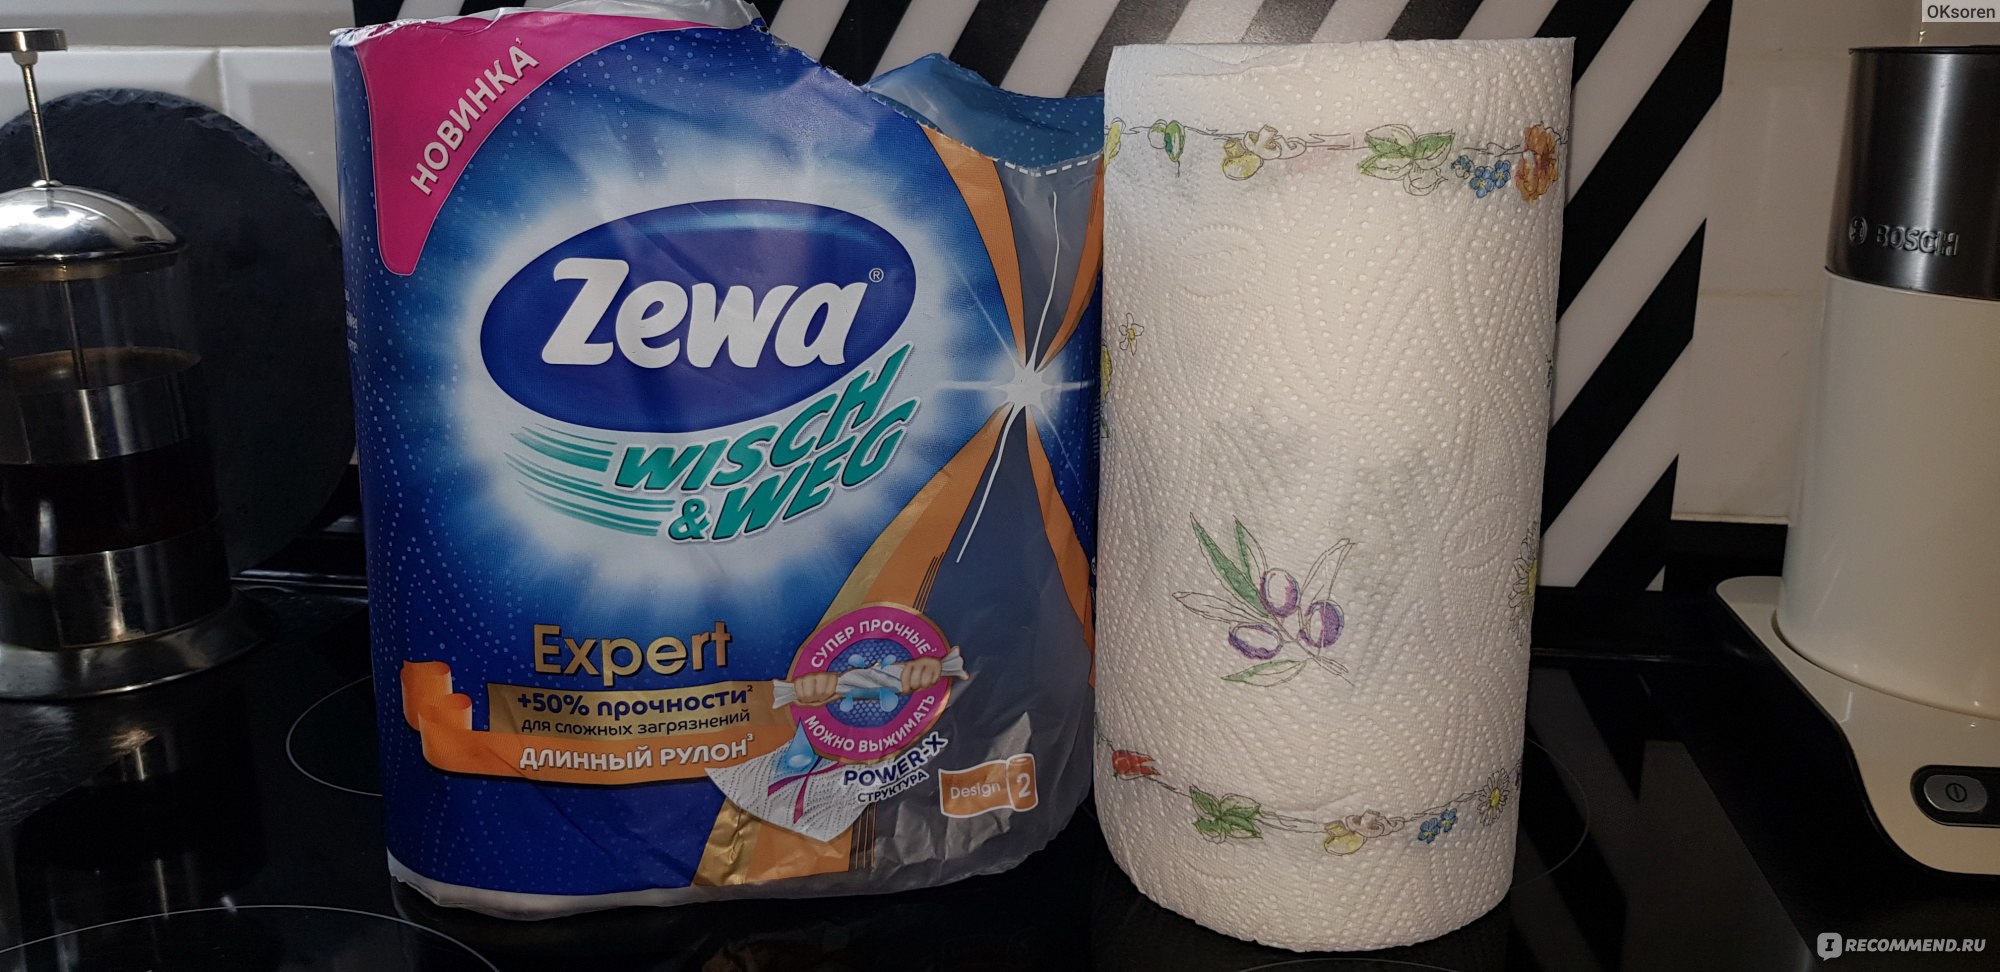 Домовенок зева купить. Бумажные полотенца Zewa эксперт. Бумажные полотенца Zewa Expert Wisch Weg длинный рулон 2 рулона. Бумажные полотенца Zewa Wisch Weg. Бумажные полотенца Zewa длинный рулон.